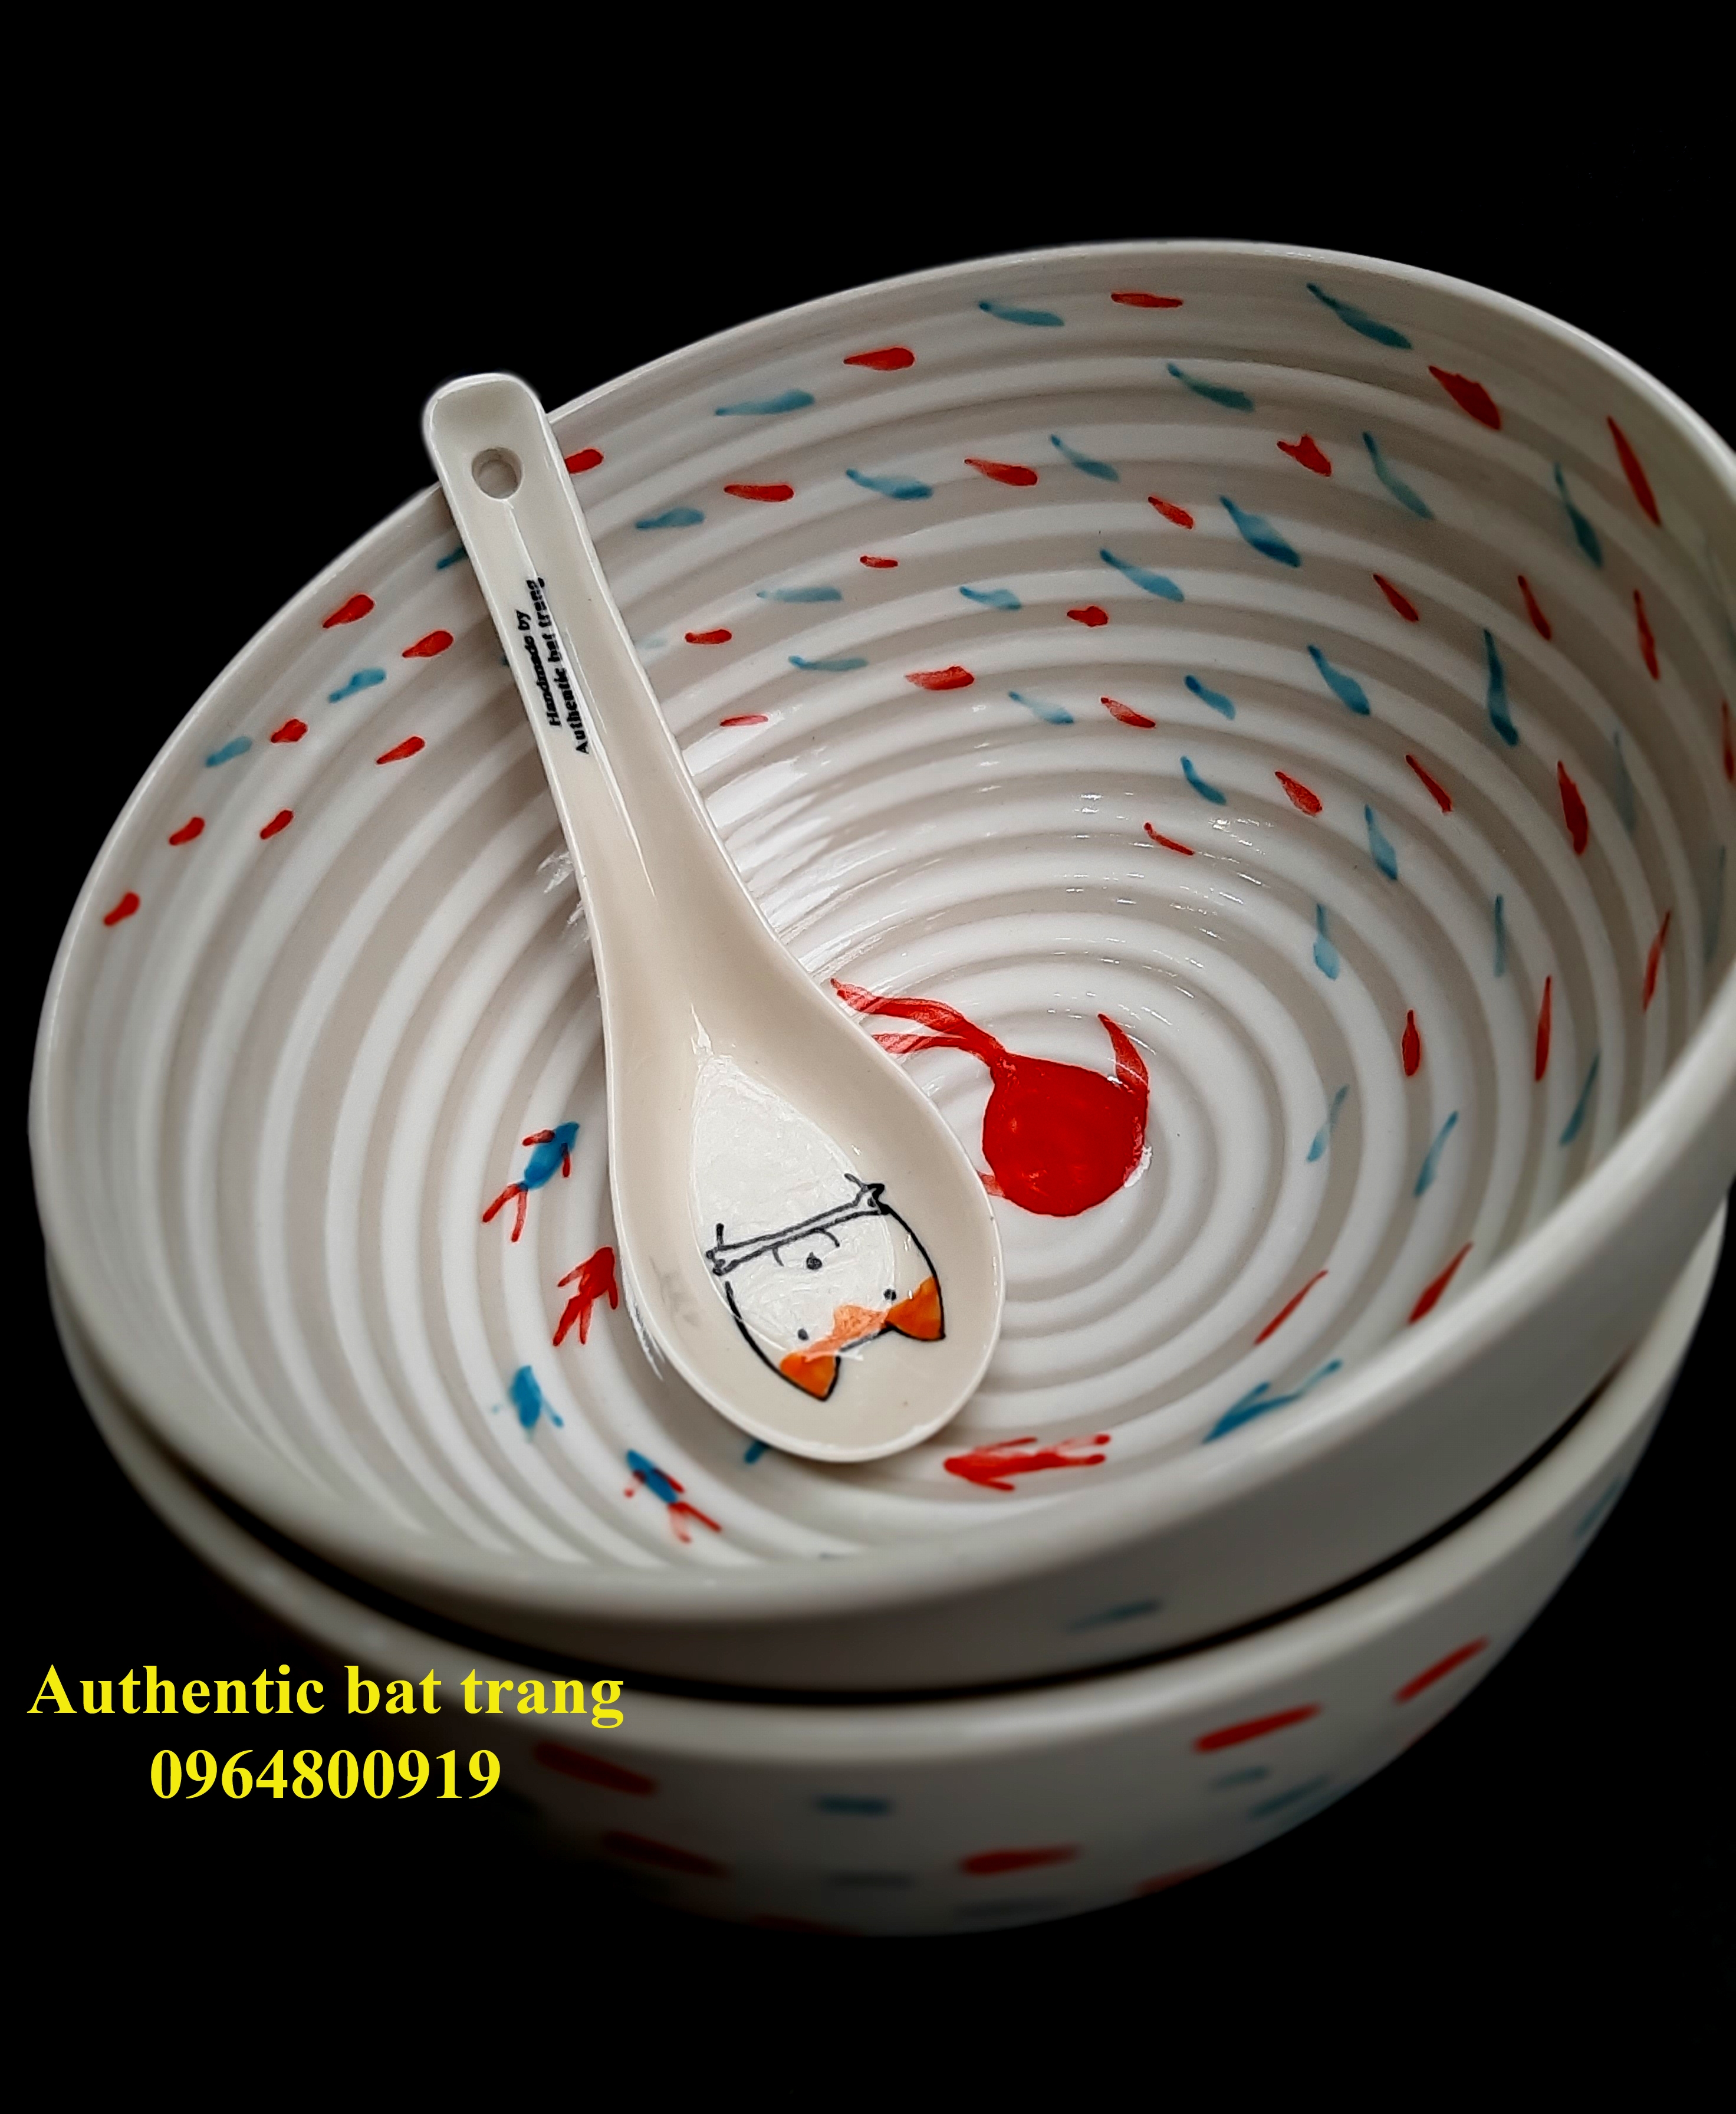 Soup  bowls - phở and rice bowls with Fishes design/ bát phở, bát cơm sản xuất tại xưởng gốm Authentic bat trang